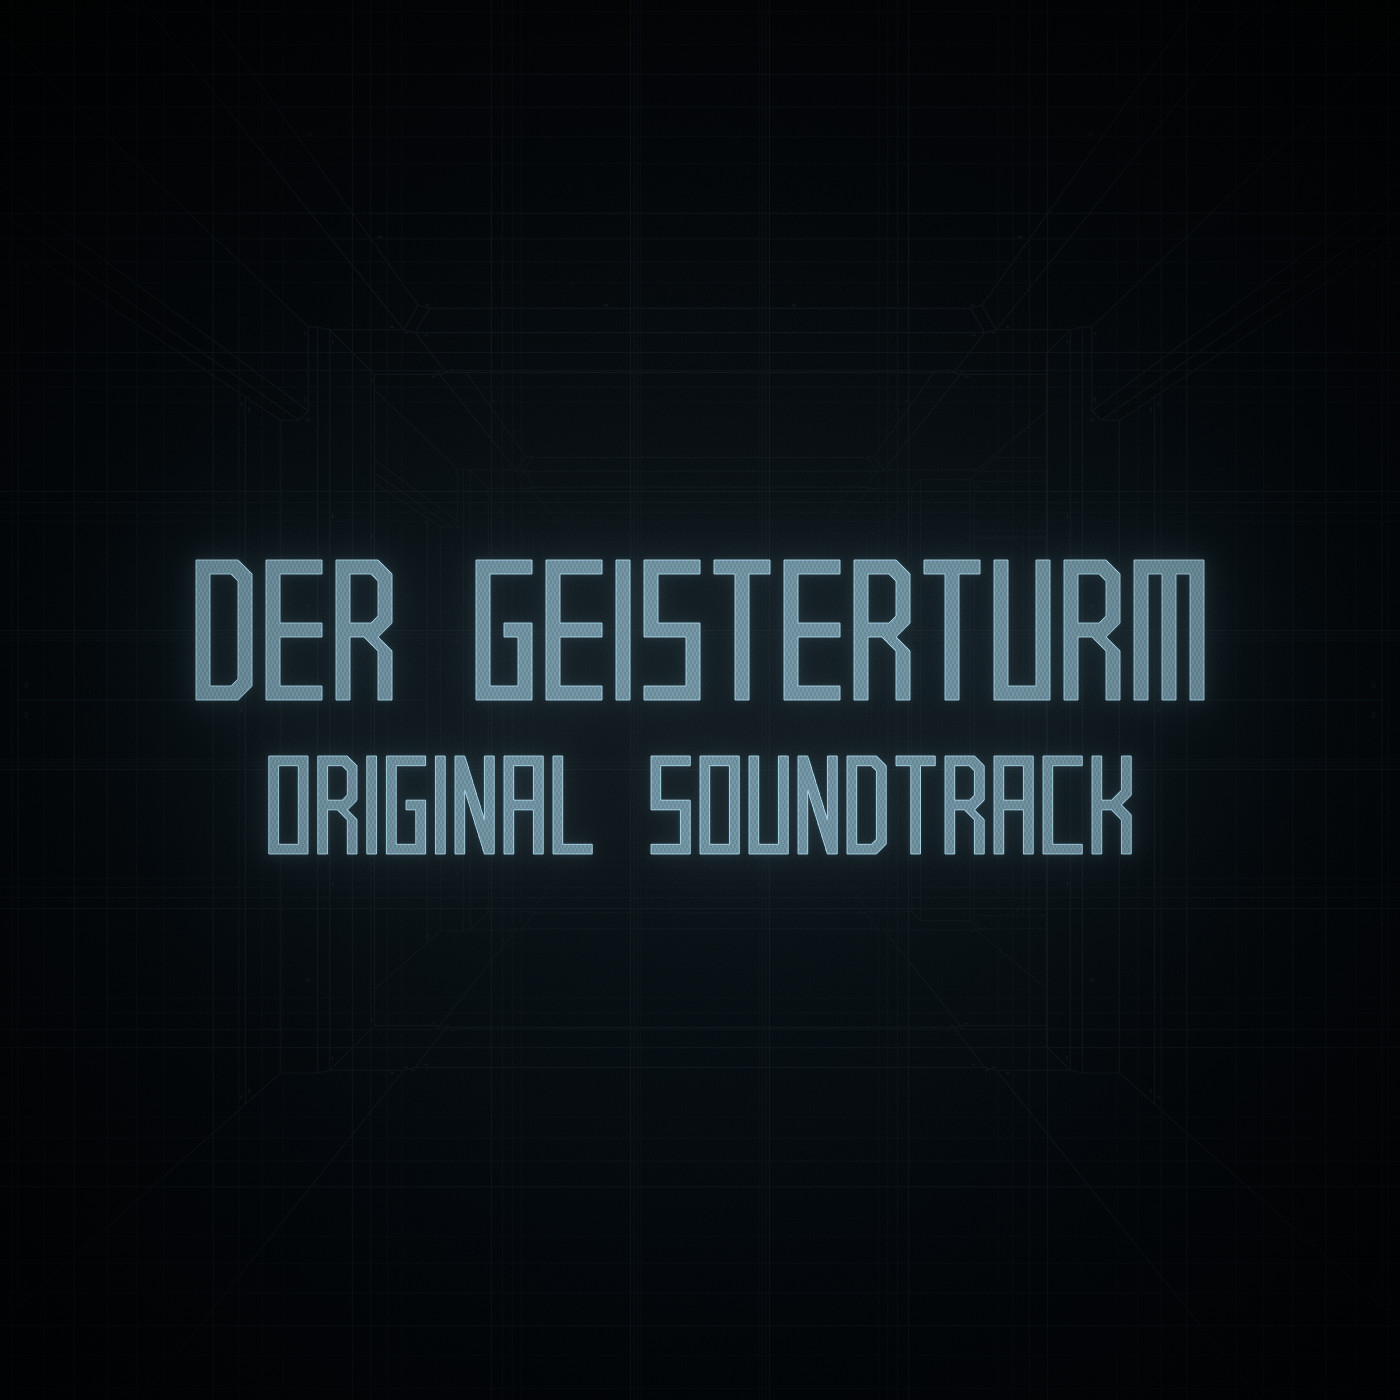 Der Geisterturm Original Soundtrack screenshot